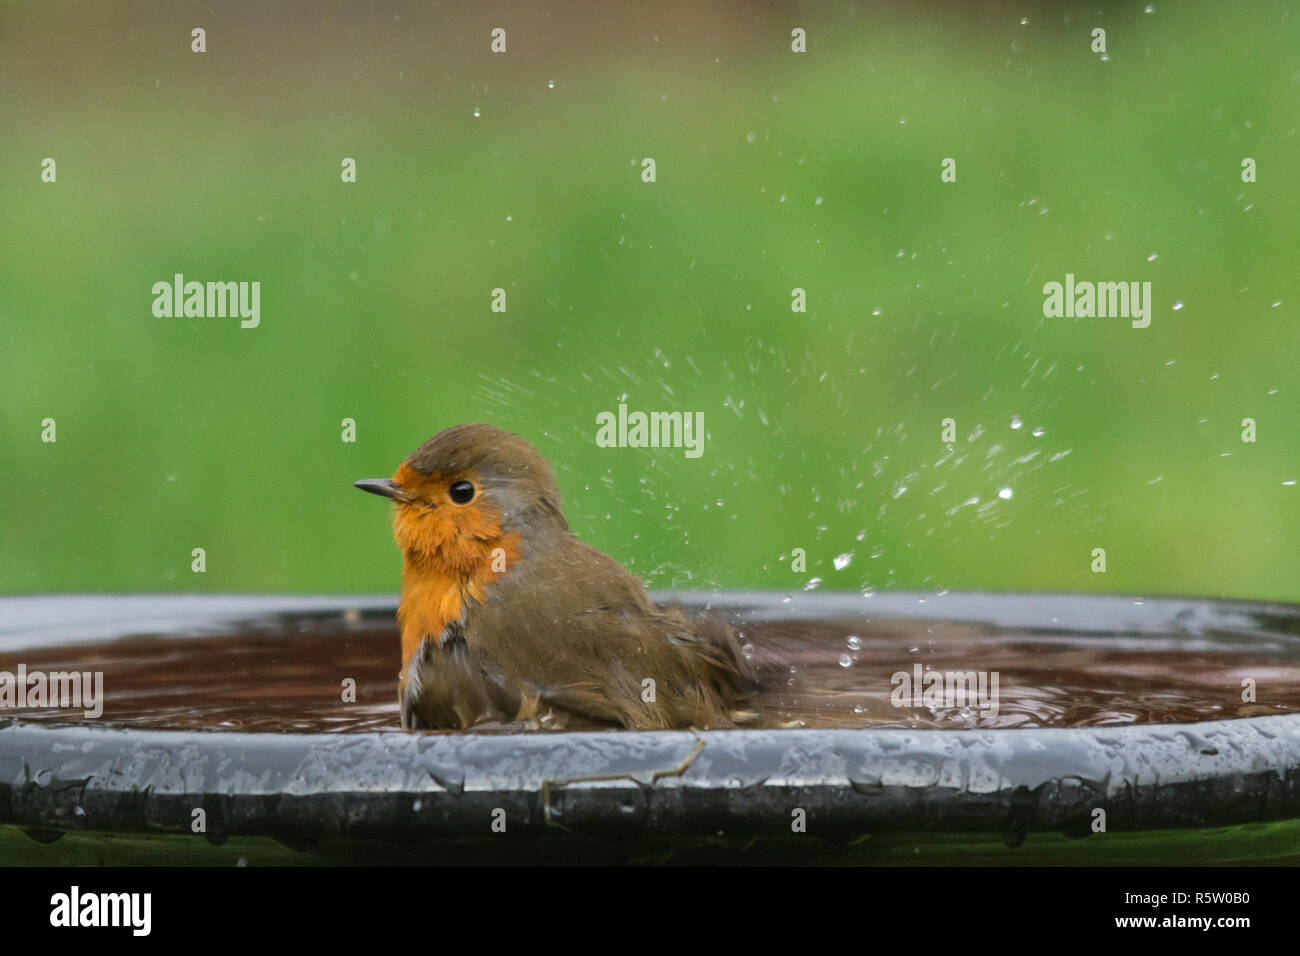 Robin (Erithacus rubecula), small bird having a bath, garden wildlife, animal humour, humor Stock Photo